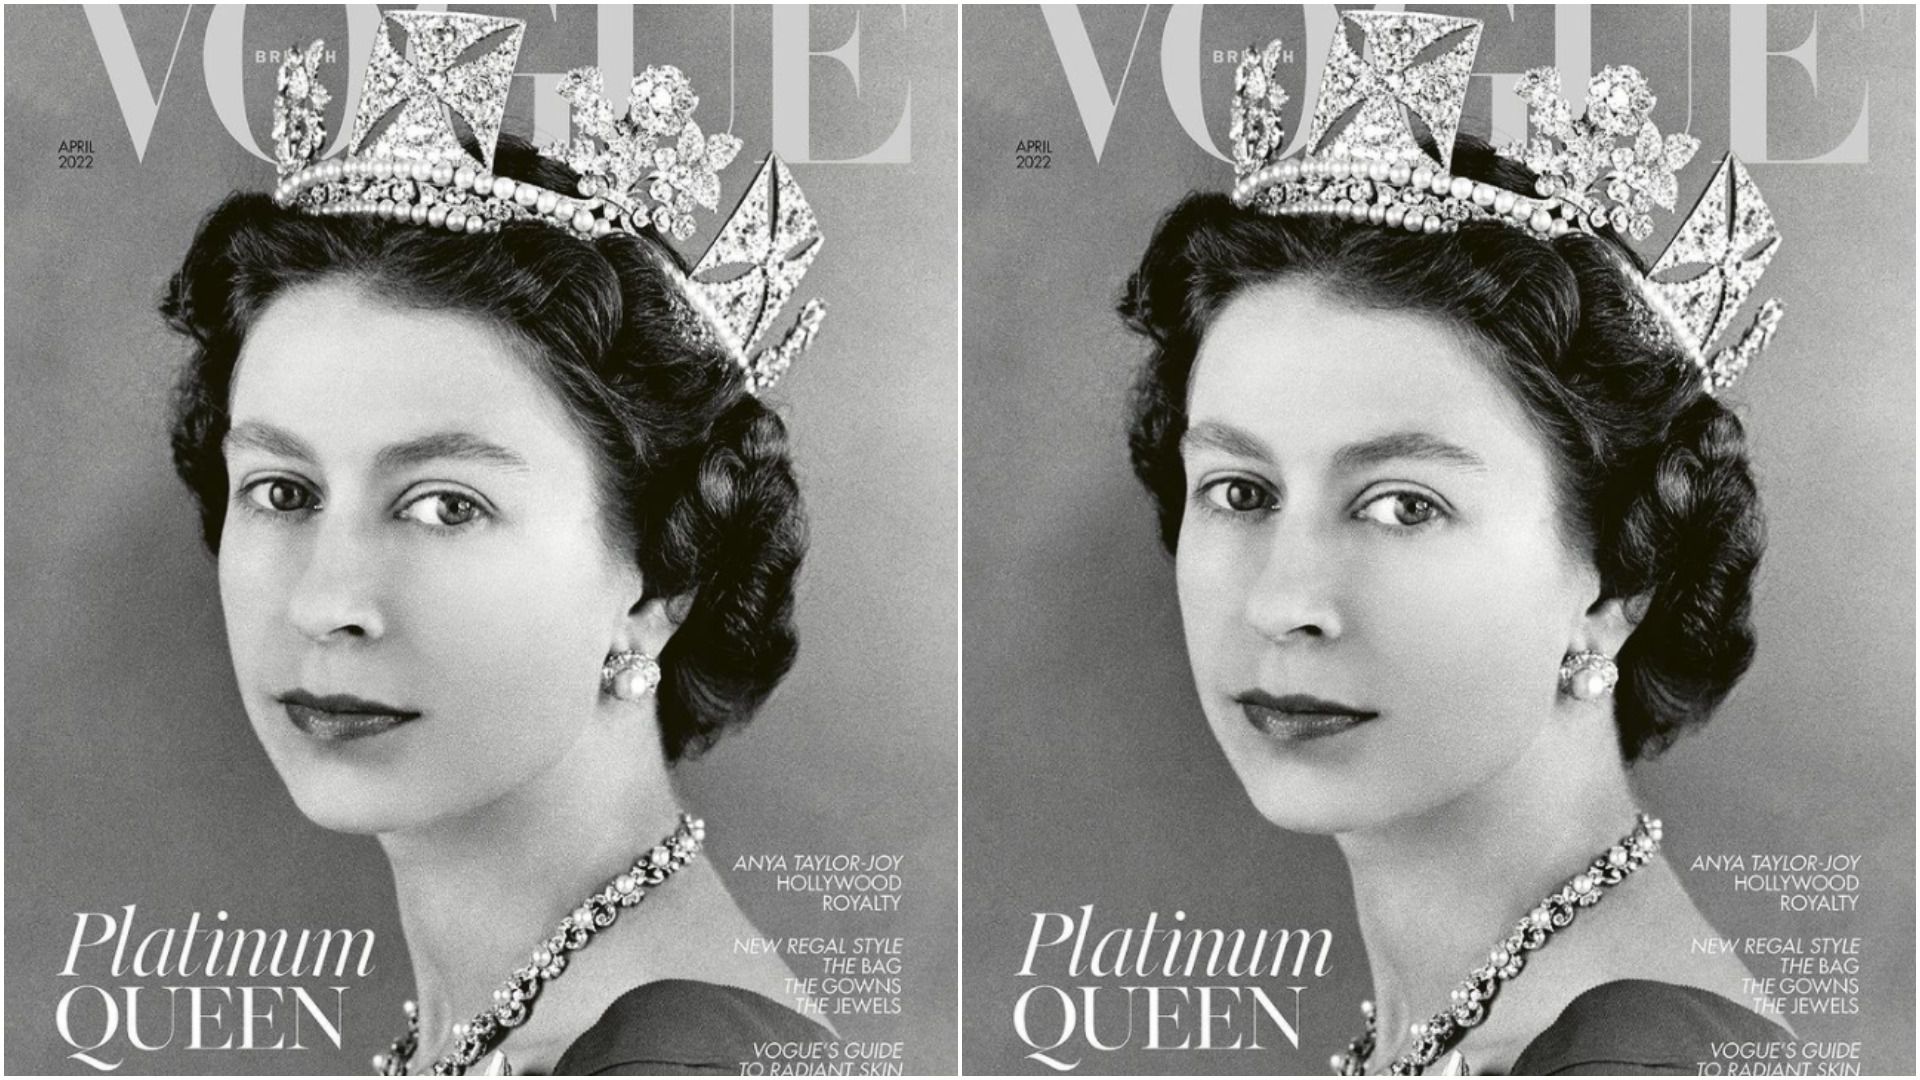 Britanski Vogue naslovnicom za travanjki broj odao počast kraljici Elizabeti II. povodom platinastog jubileja